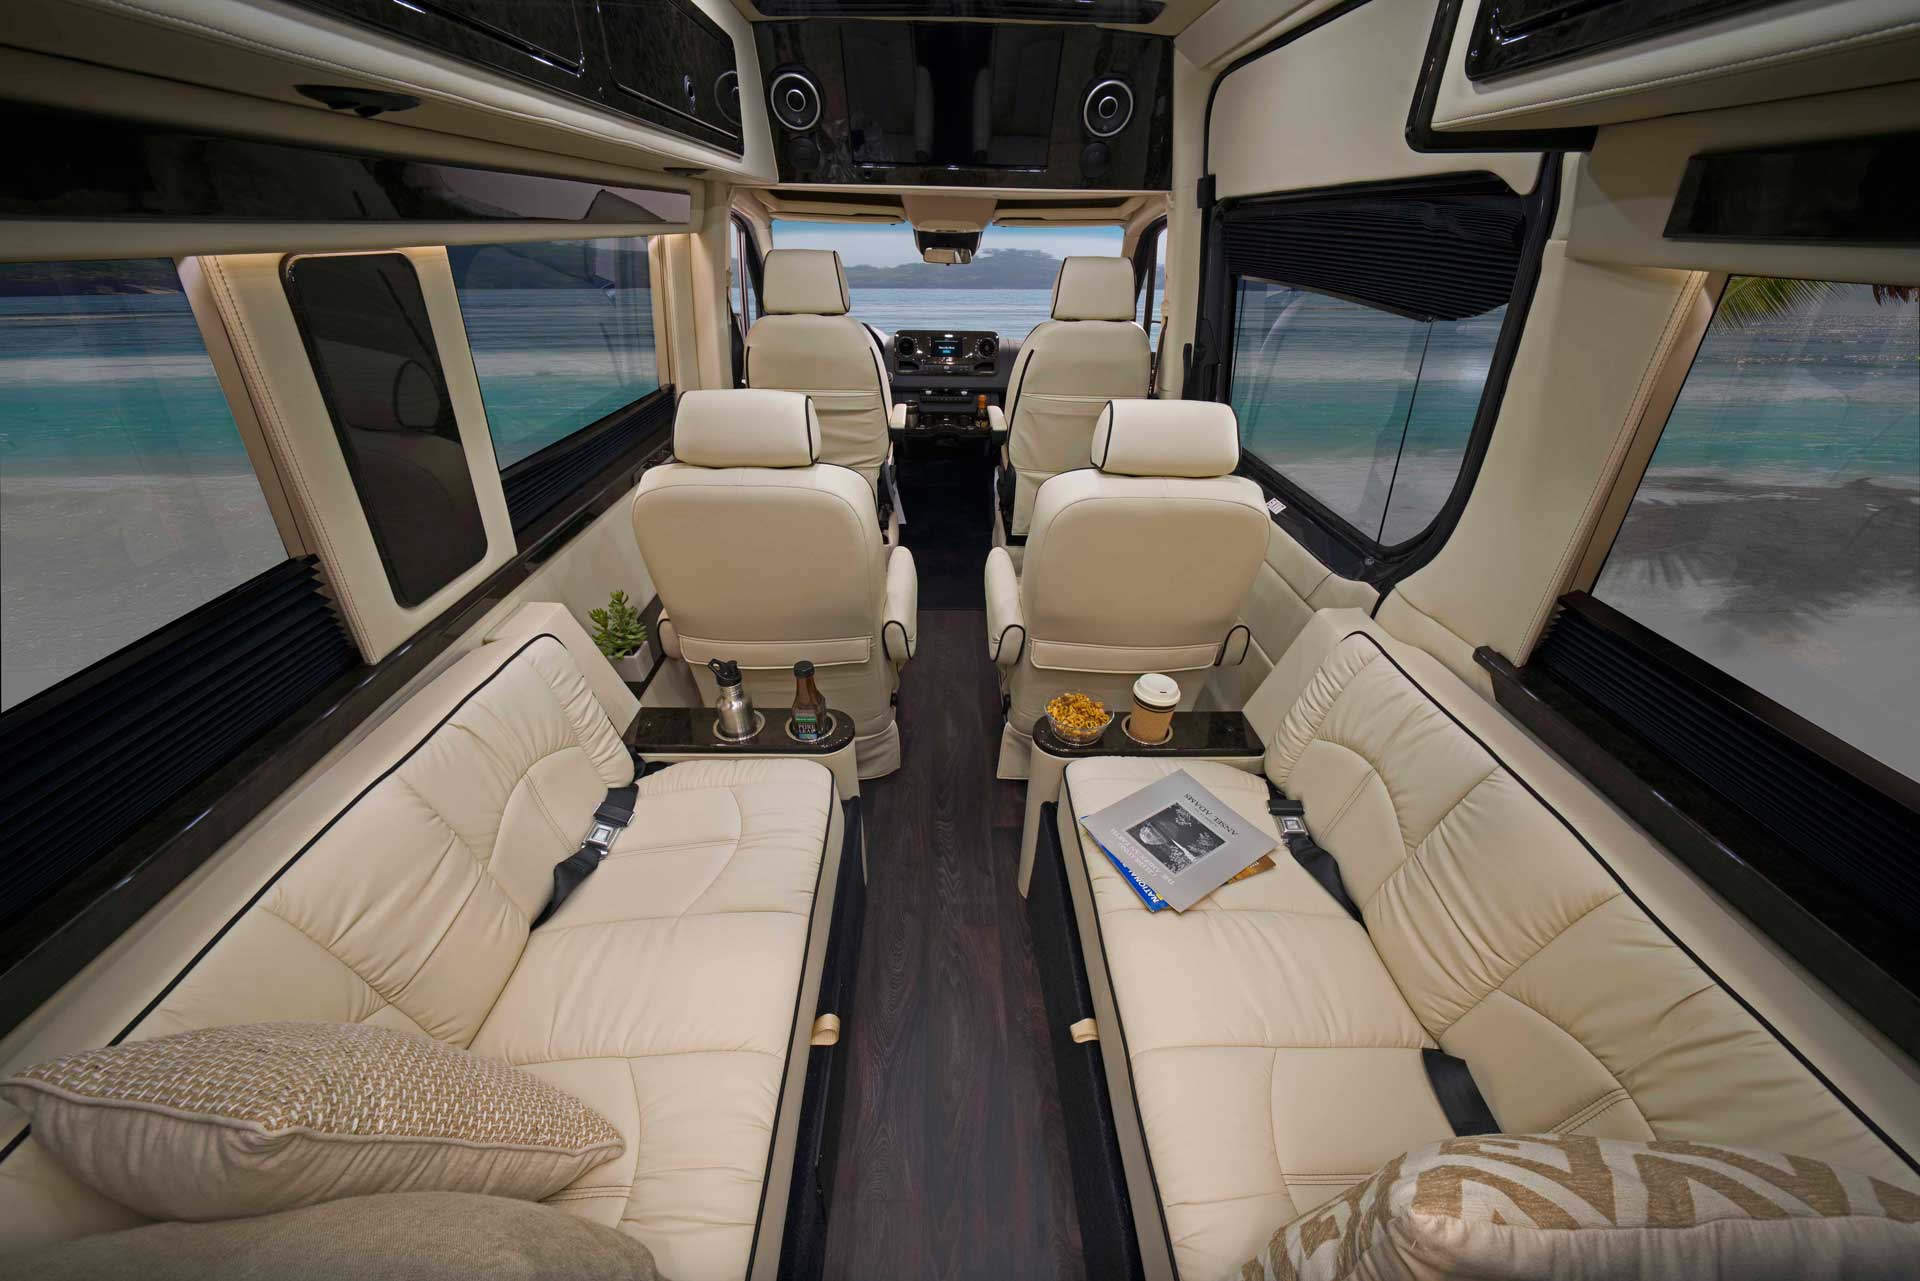 Luxury Vans - Midwest Automotive Designs